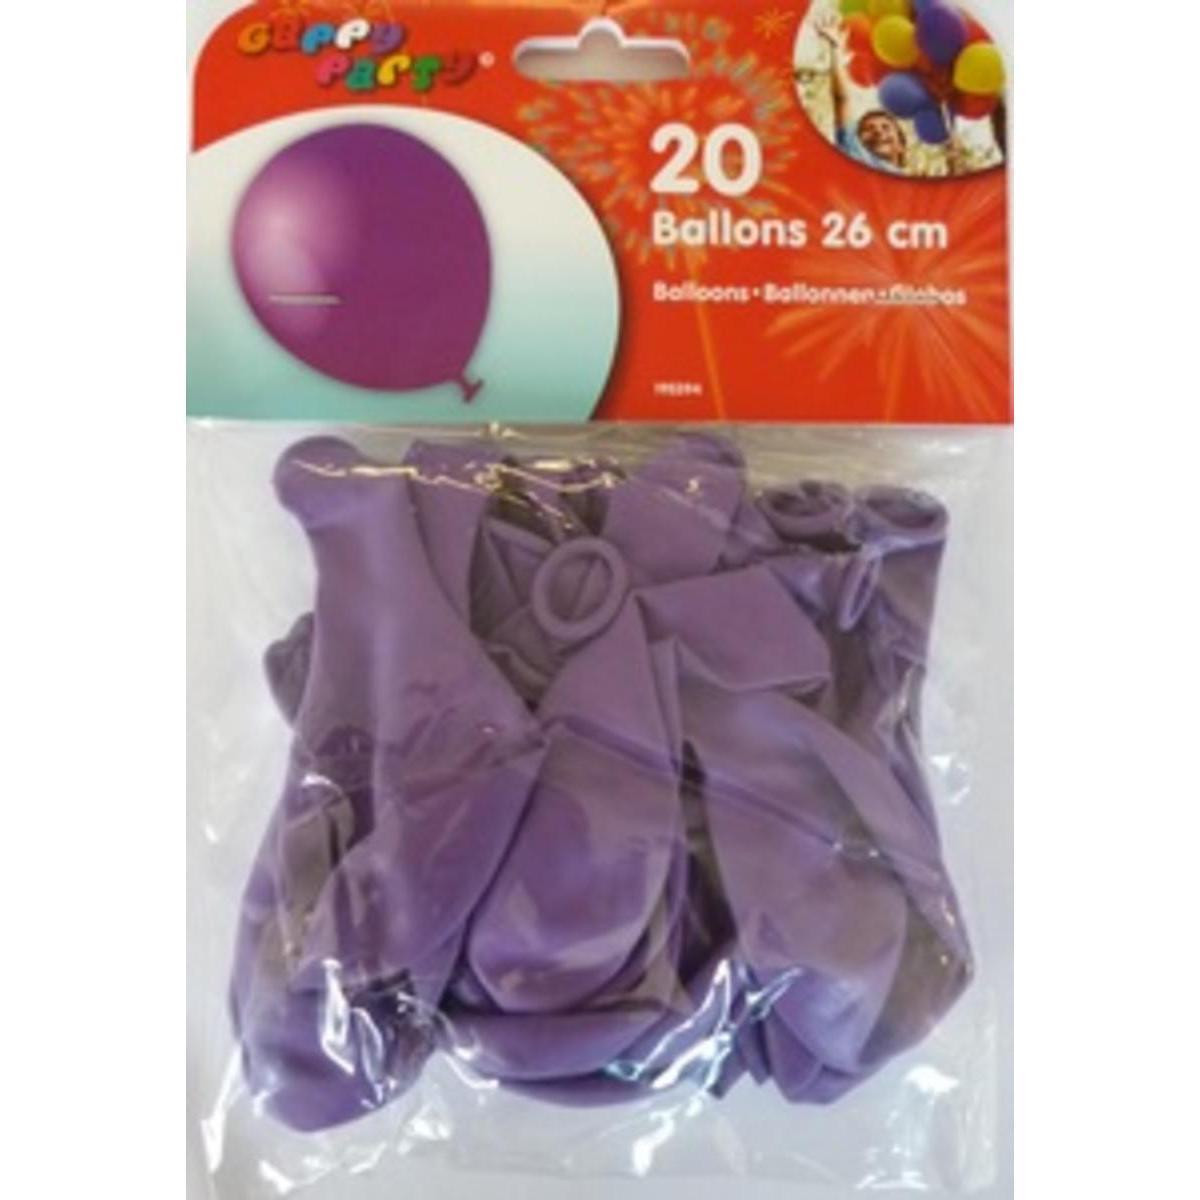 Ballons 25 cm pourprex 20 pièces Gappy party